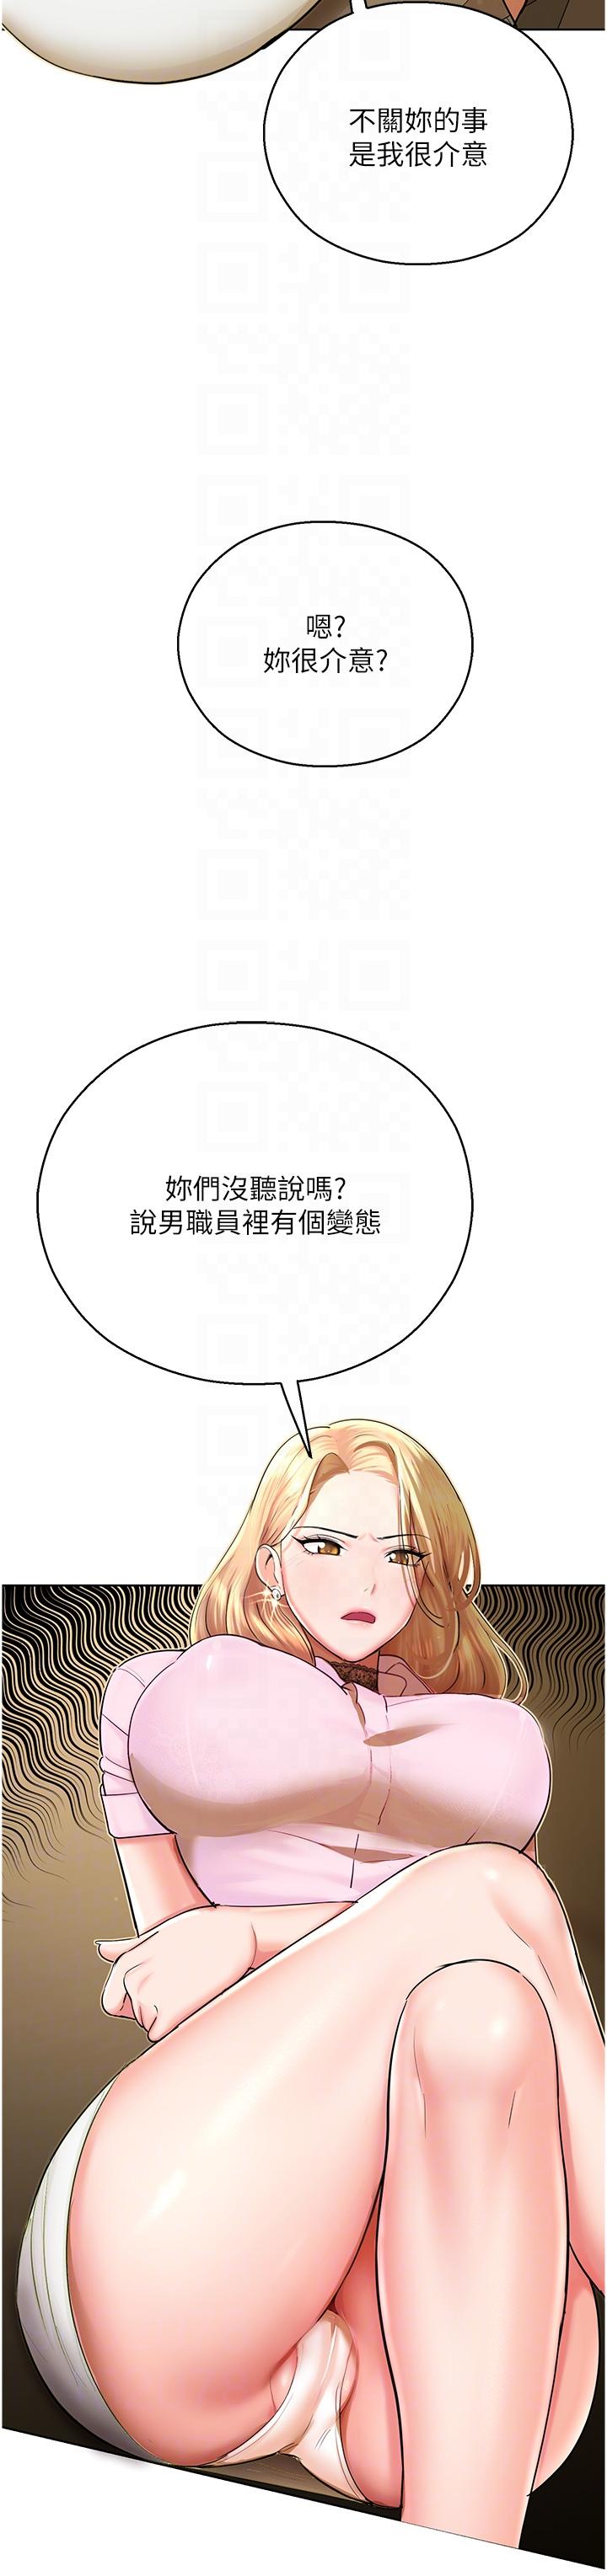 韩国污漫画 命運濕樂園 第5话-其实你很想被上吧 26